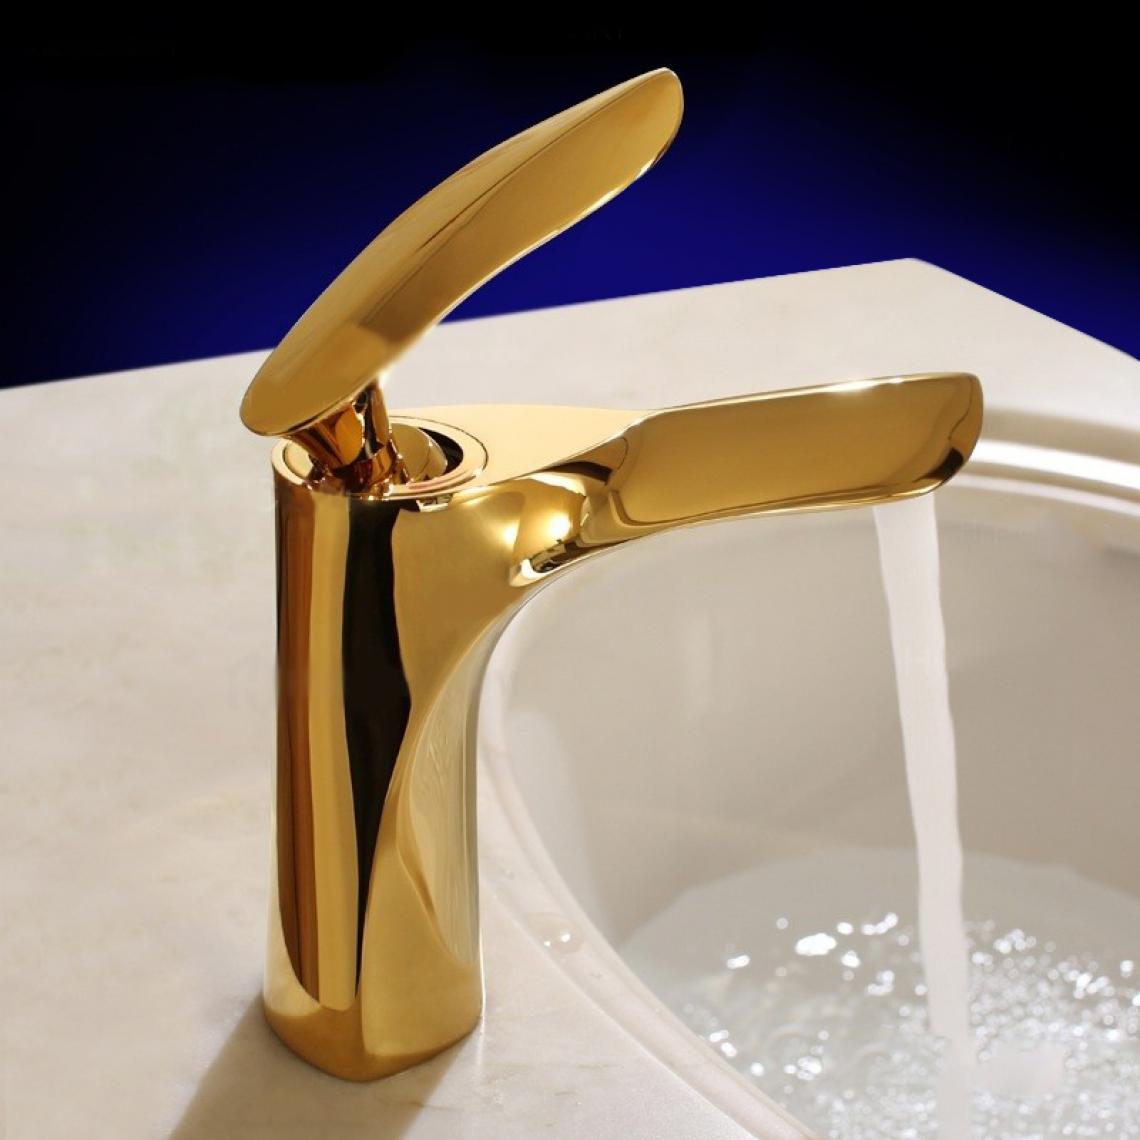 Kroos - Robinet lavabo mitigeur contemporain en laiton massif doré - Robinet de lavabo